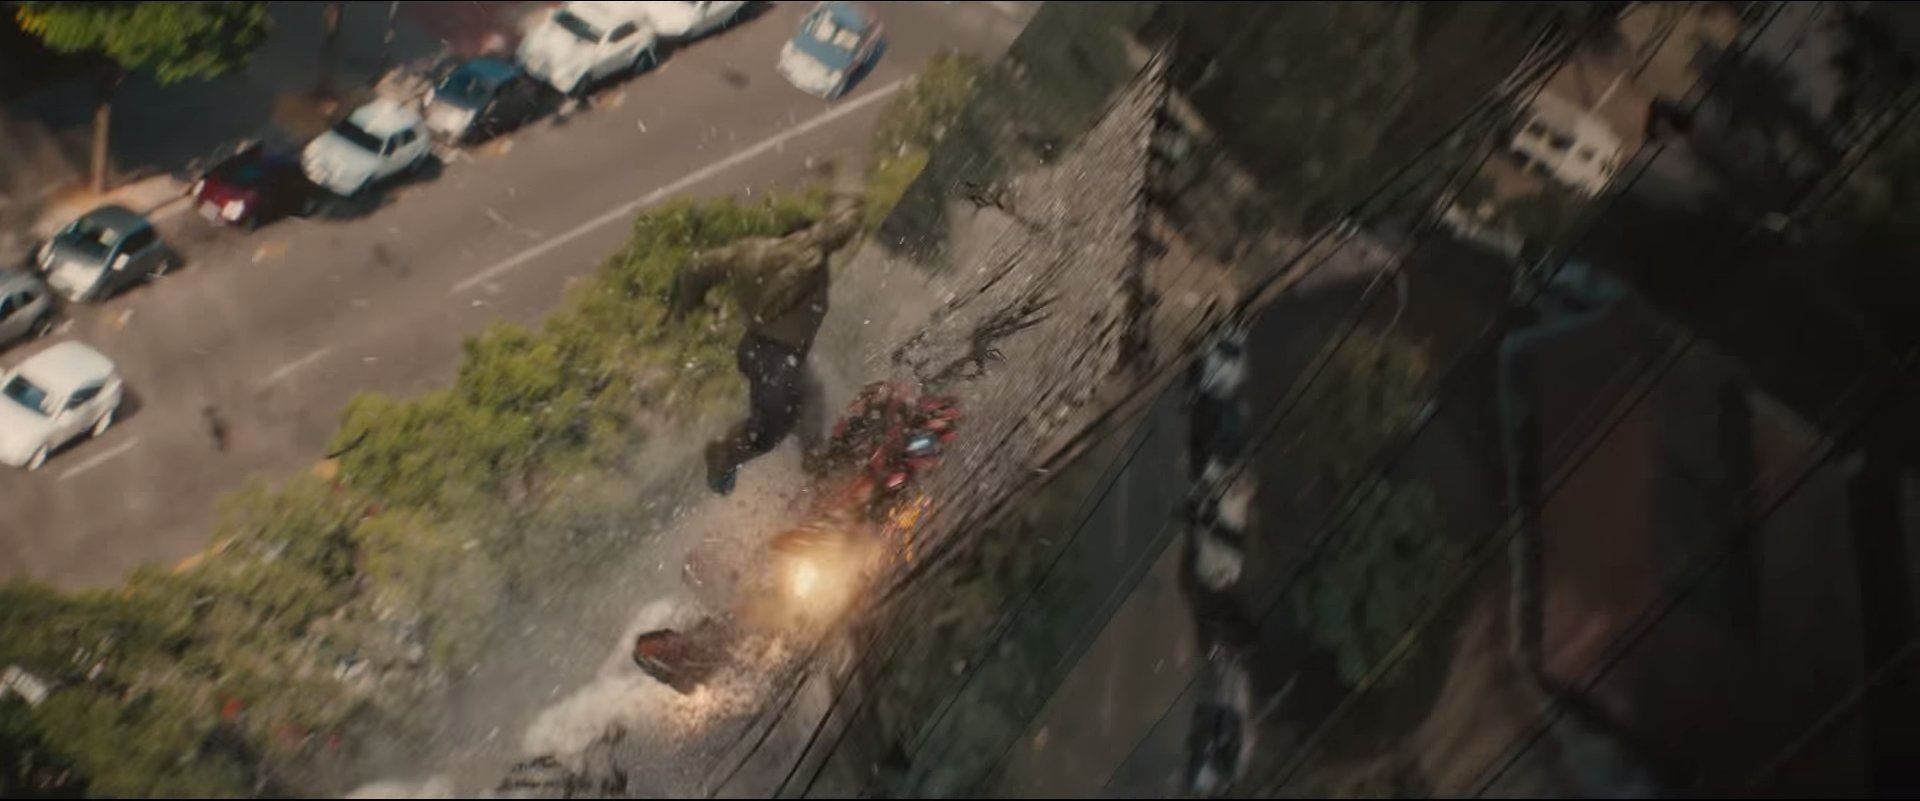 Une nouvelle vidéo montrant Hulk vs Iron Man dans Avengers l'Ere d'Ultron